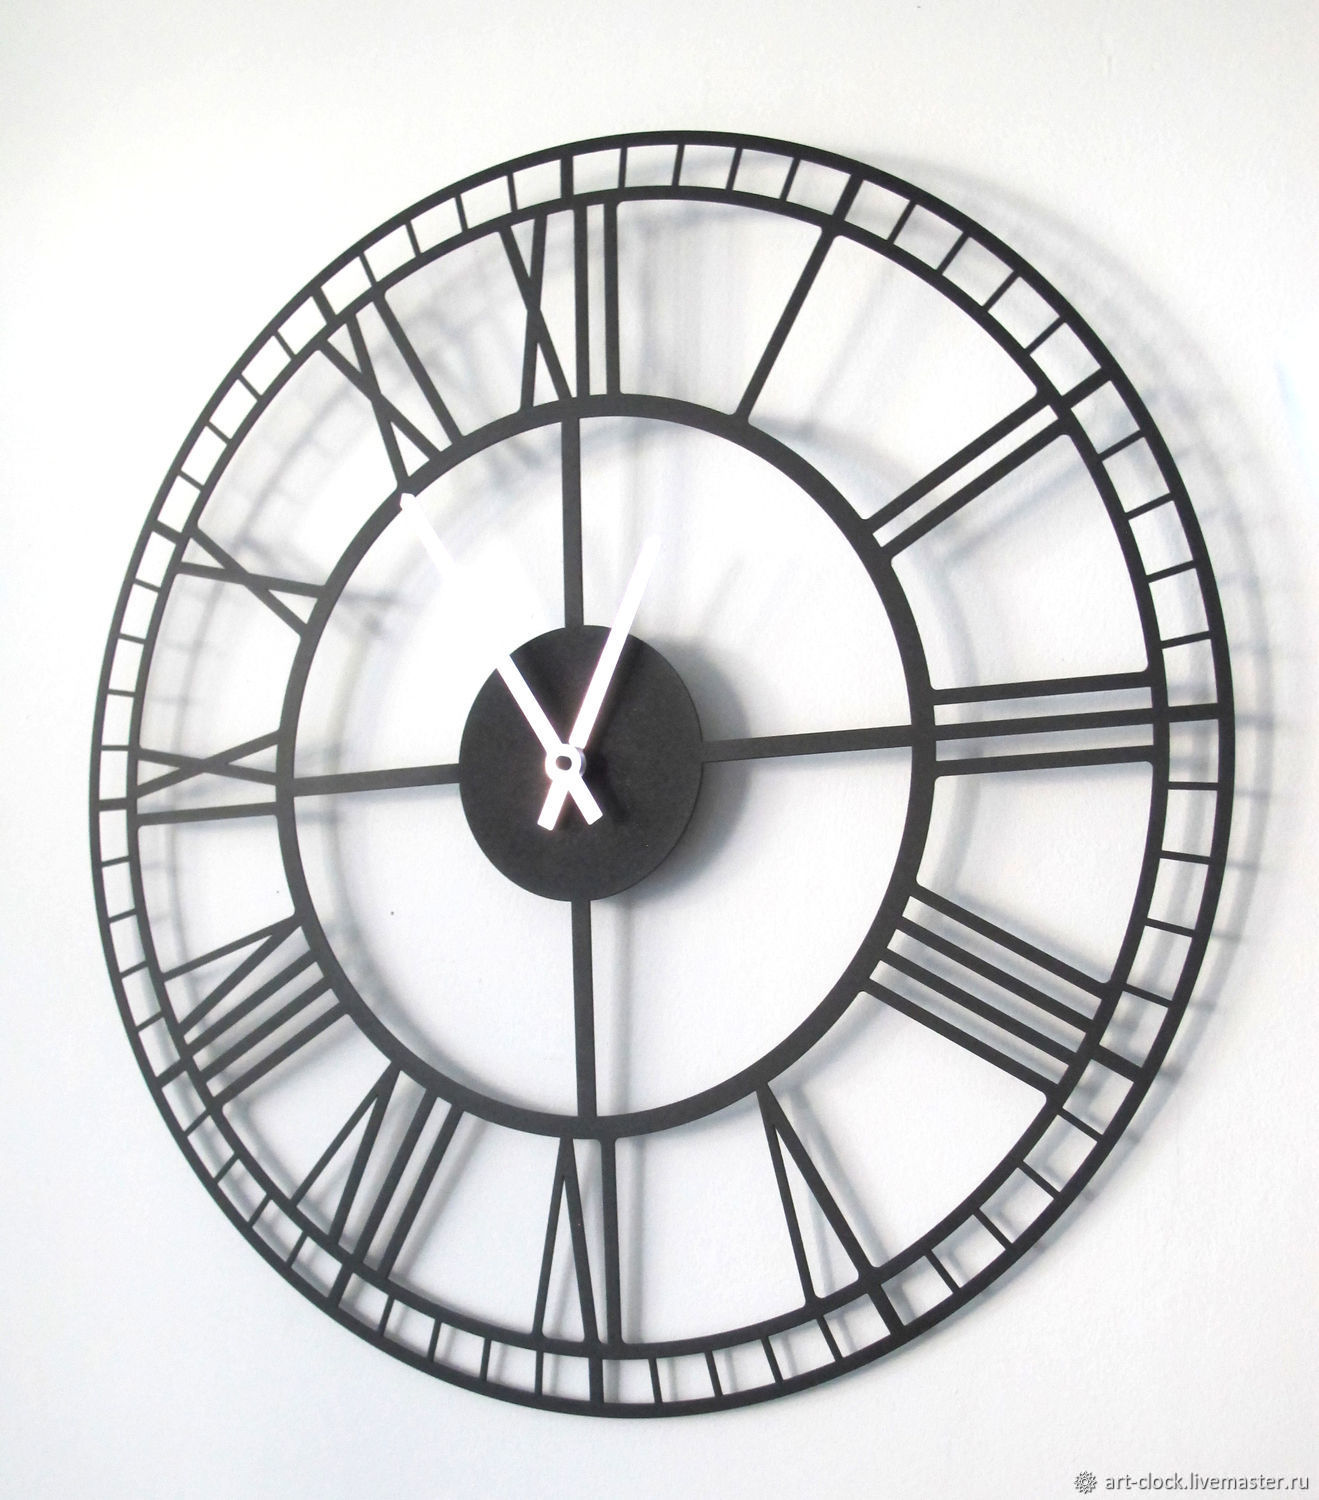 Часы настенные 50 см. Часы настенные. Оригинальные настенные часы. Часы настенные металлические. Часы настенные серые большие.